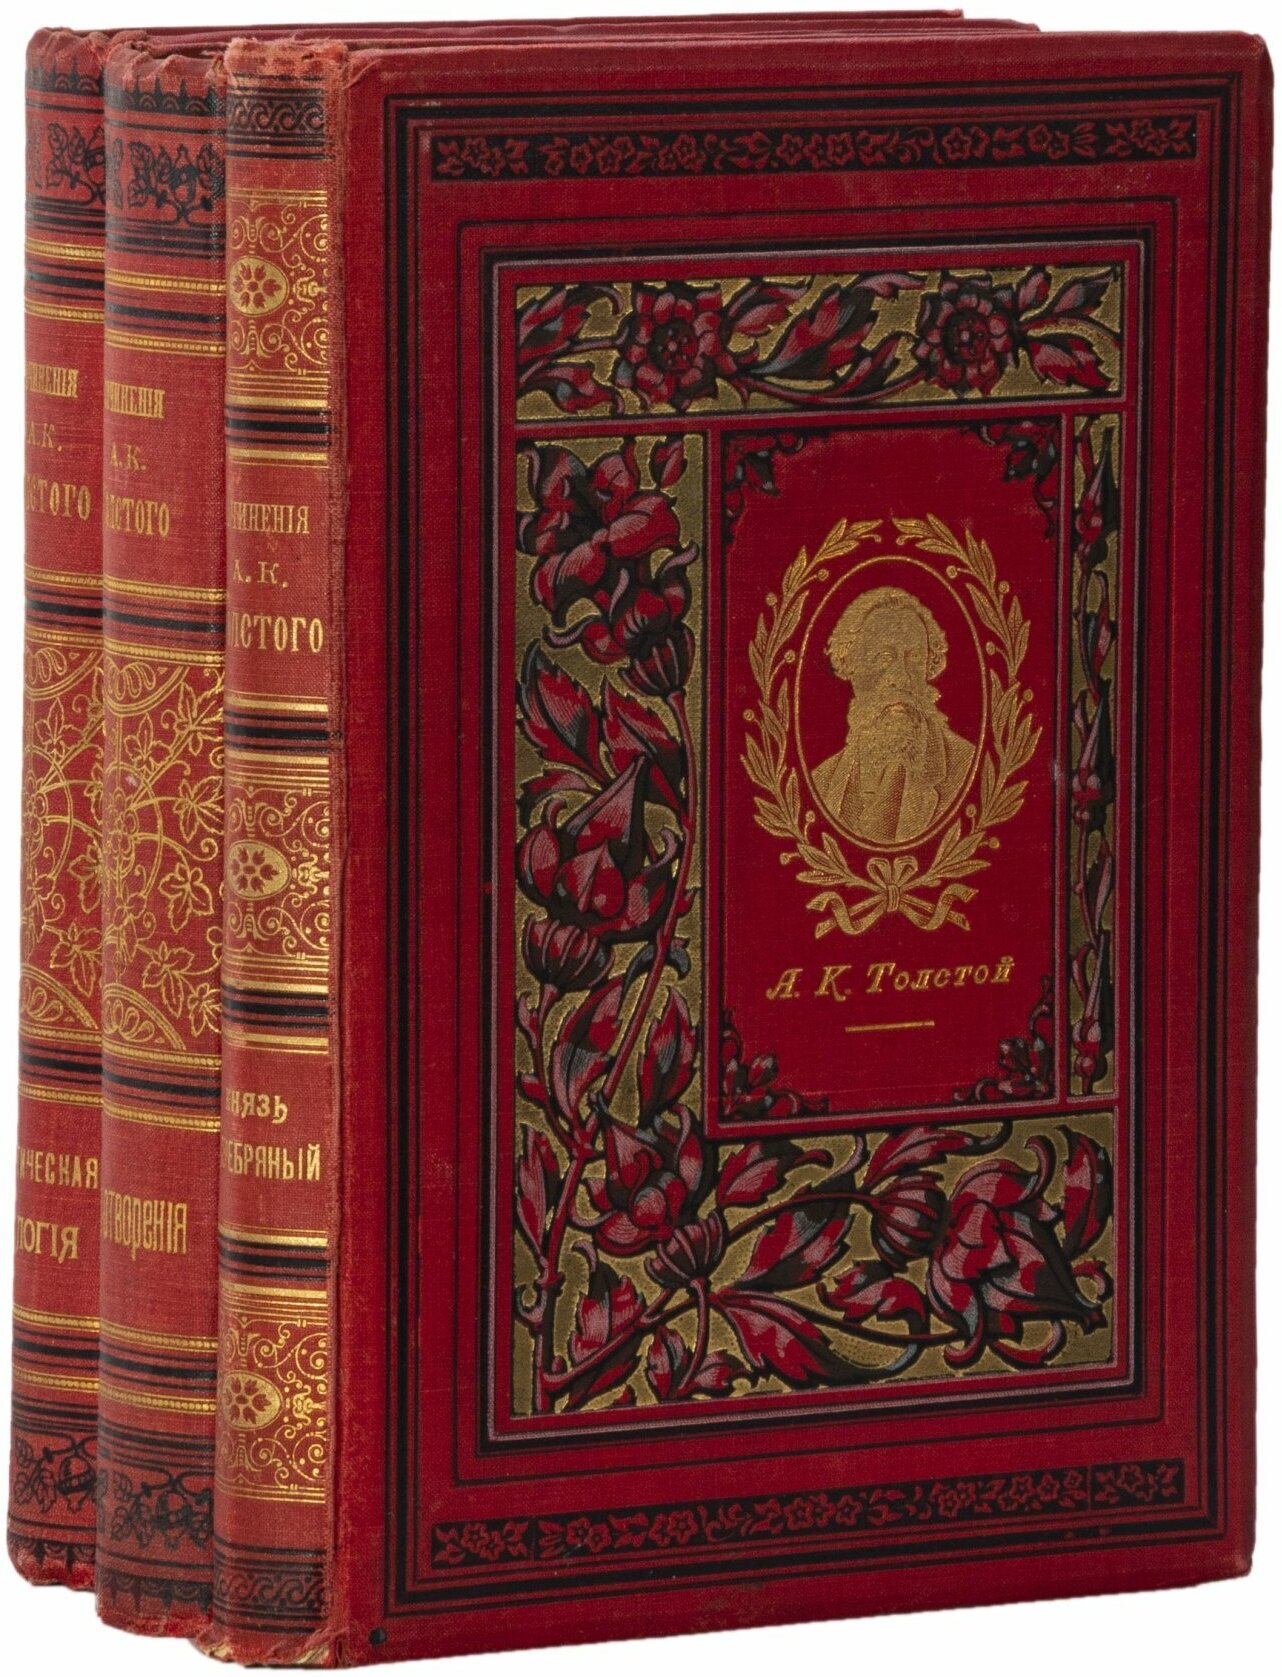 Полное собрание сочинений А. К. Толстого (1 и 2 тома в одной книге), бумага